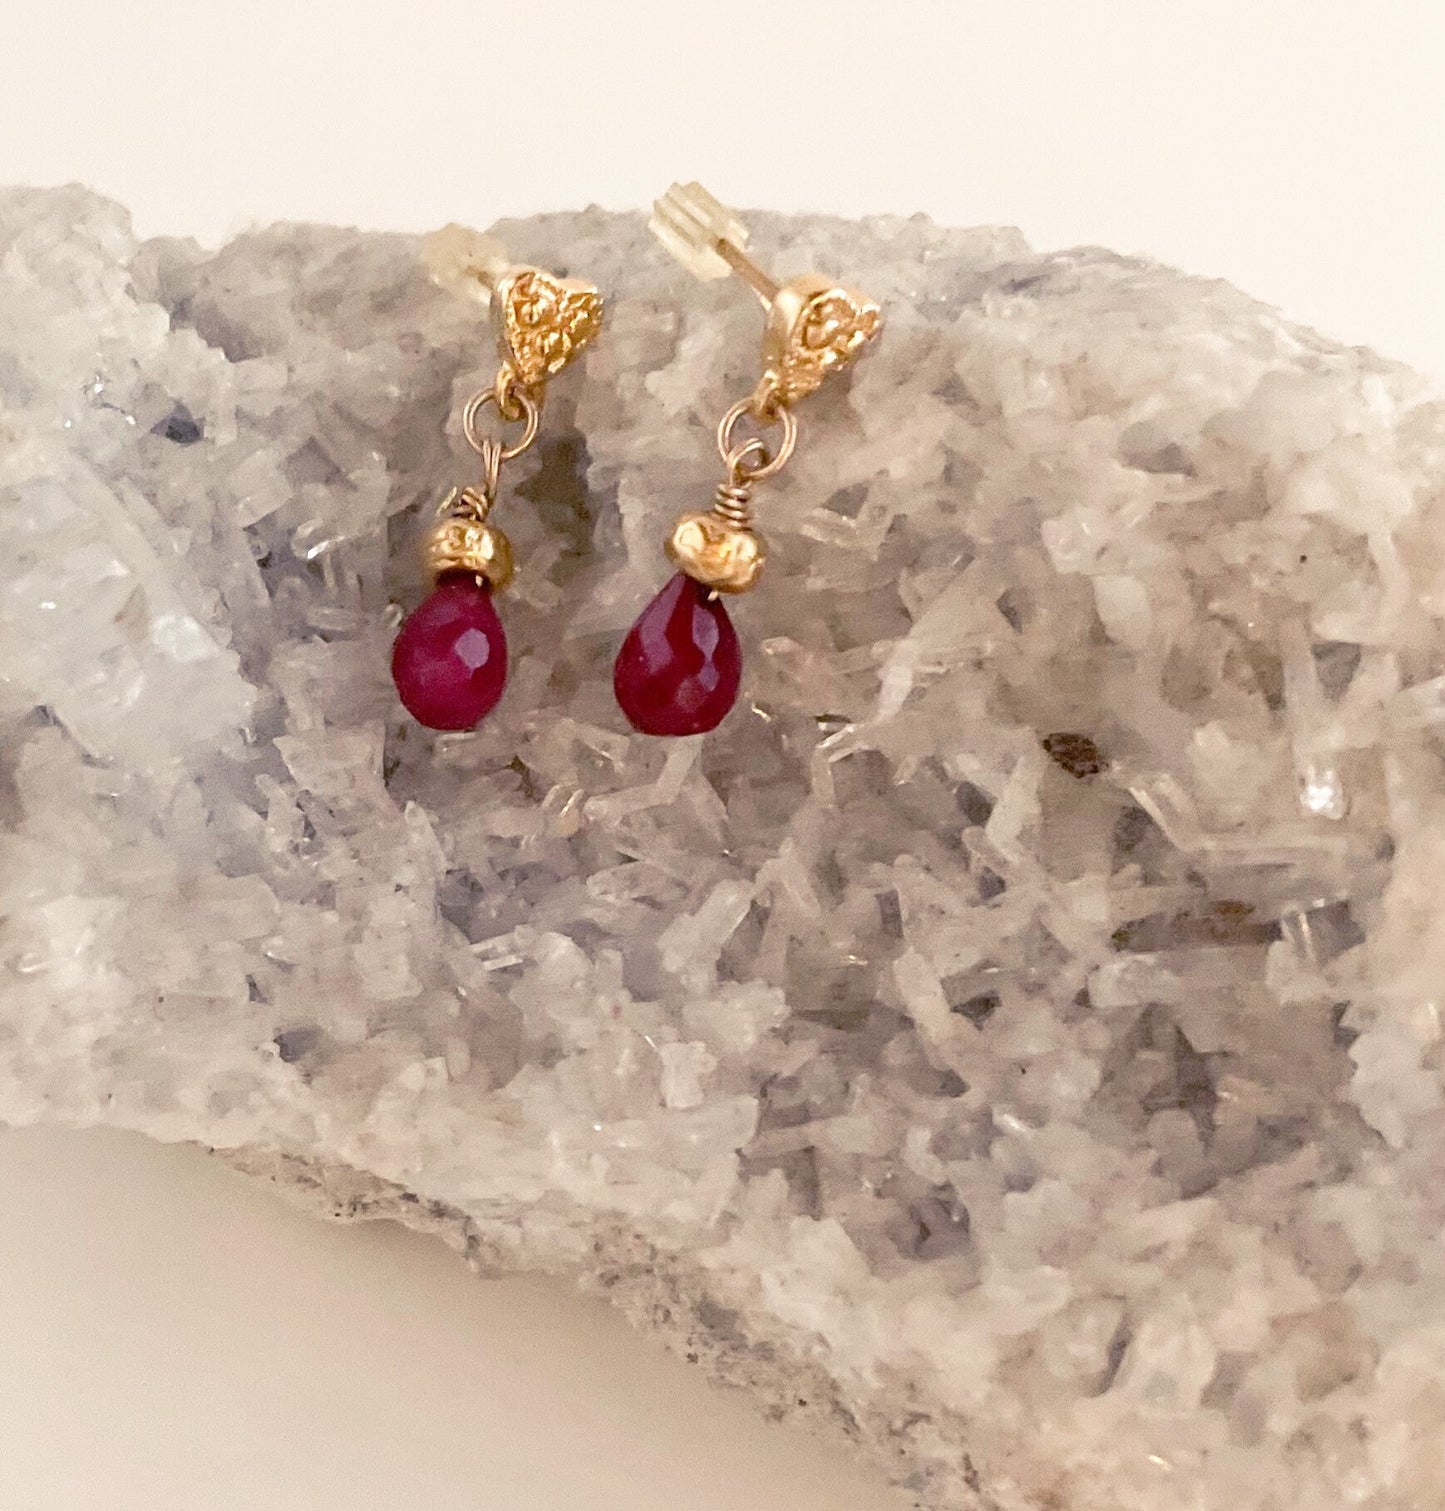 Ruby earrings, gift for her